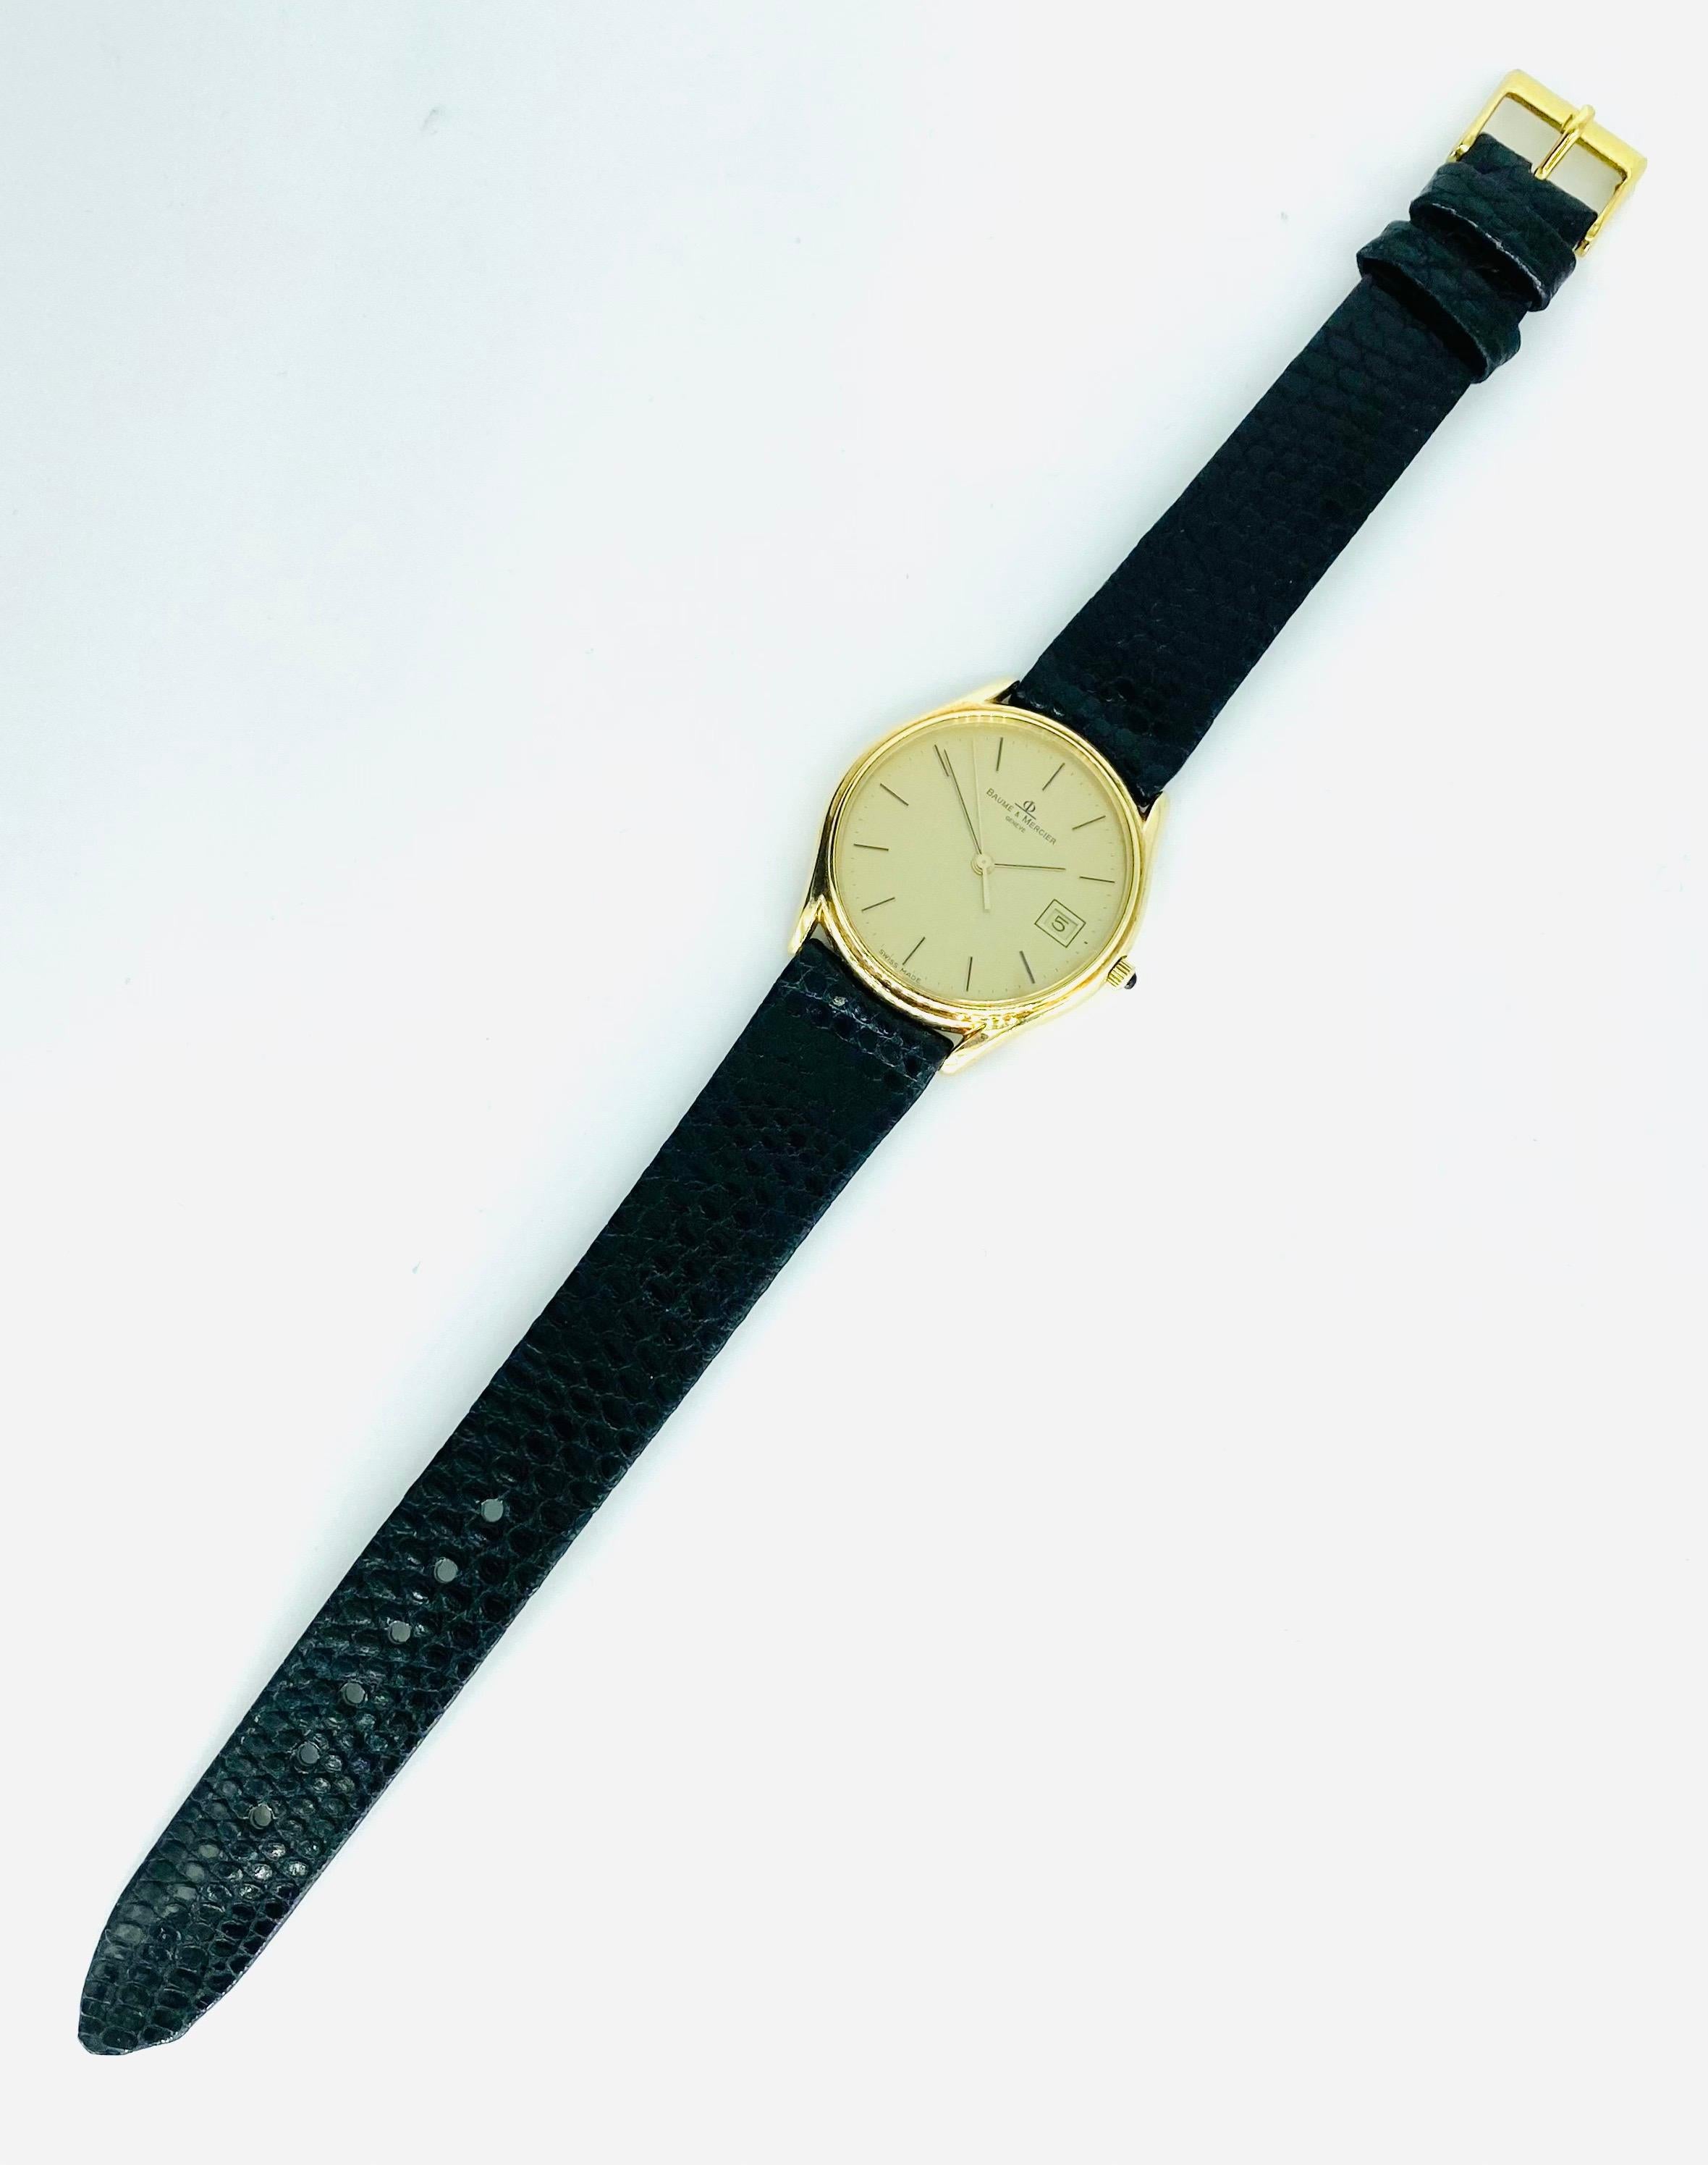 Vintage Bauer & Mercier Geneve 34mm 14k Gold Date Wristwatch. Le boîtier et le fond de la montre sont en or 14k. Bracelet neuf (la boucle n'est pas dorée). La montre mesure 34 mm, couronne comprise. Très élégante montre de tous les jours par nul